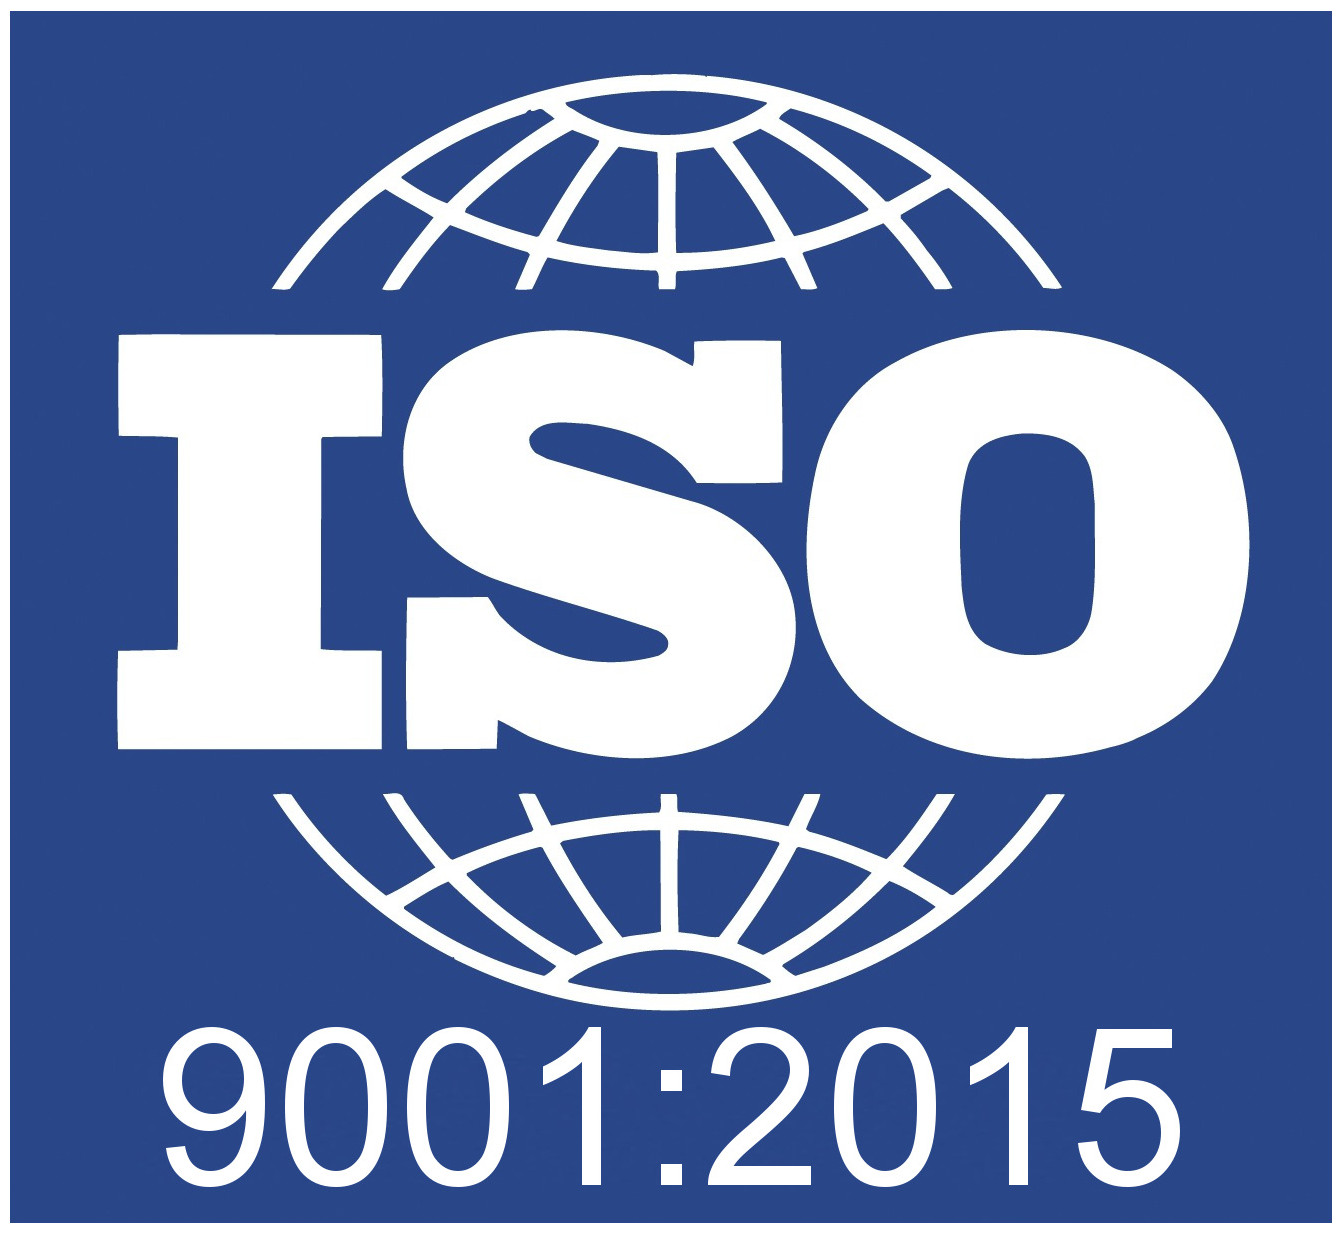 Auroradomus aggiorna il proprio certificato ISO:9001 alla versione 2015 della norma